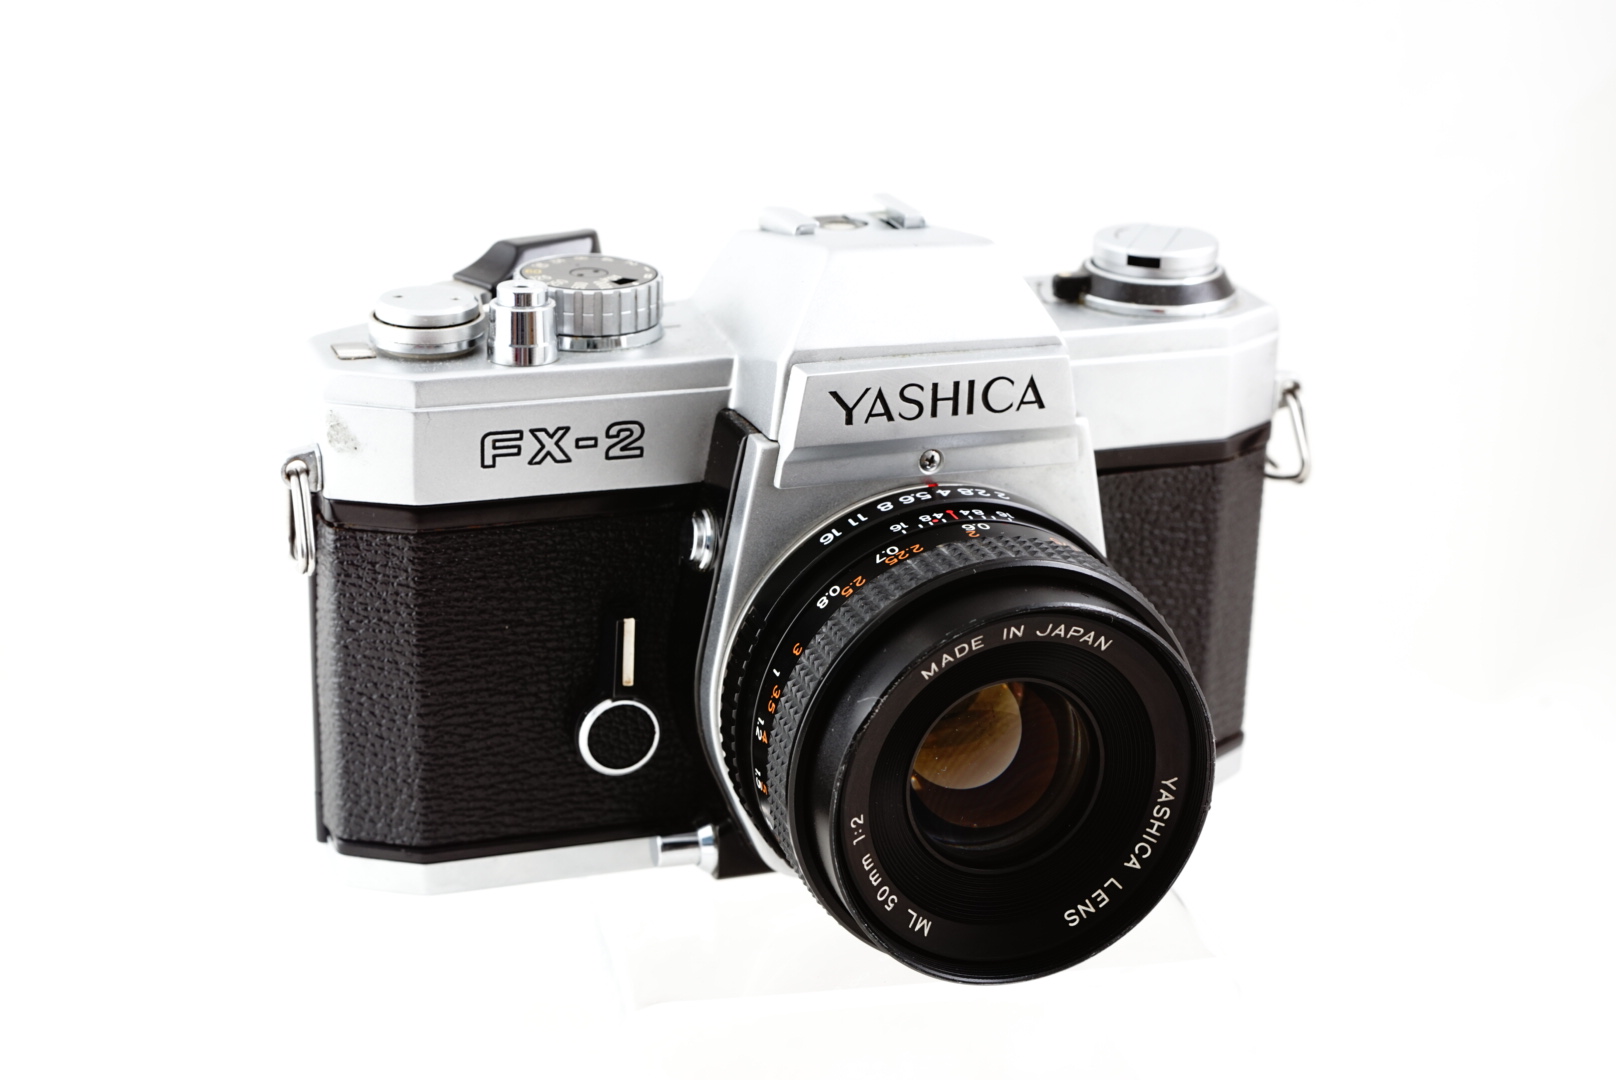 ภาพตัวอย่างกล้องฟิลม์ Yashica FX-2 ด้านหน้า พร้อมเลนส์